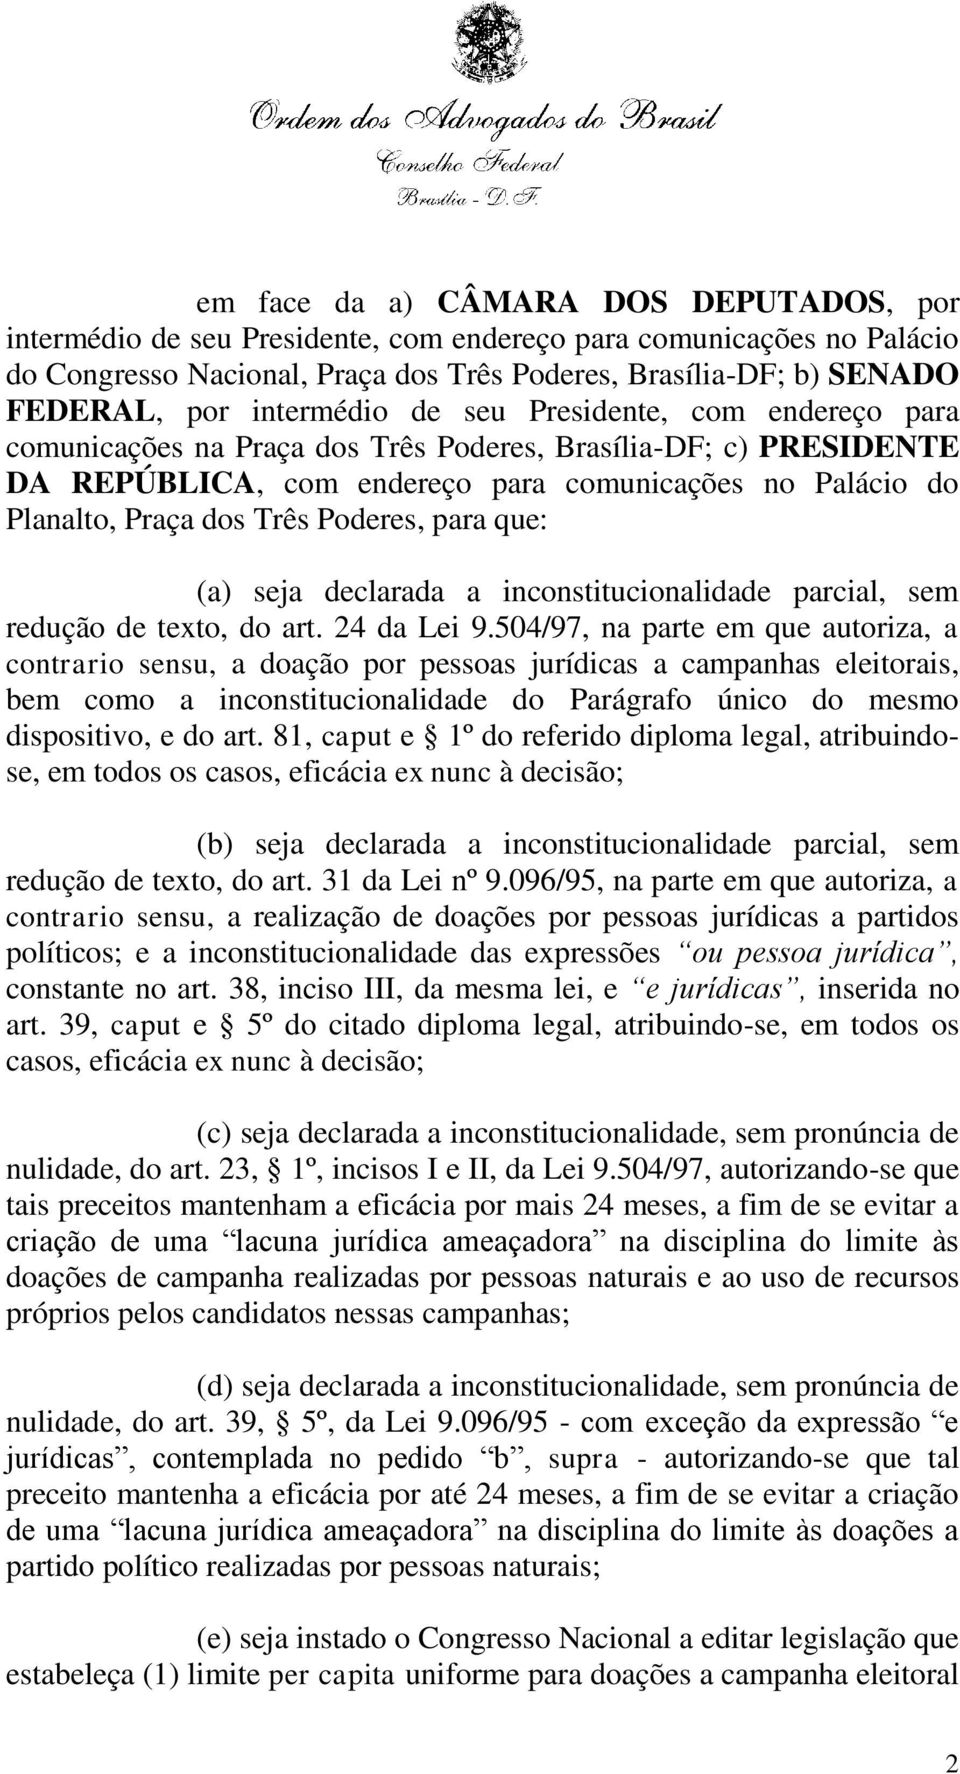 Poderes, para que: (a) seja declarada a inconstitucionalidade parcial, sem redução de texto, do art. 24 da Lei 9.